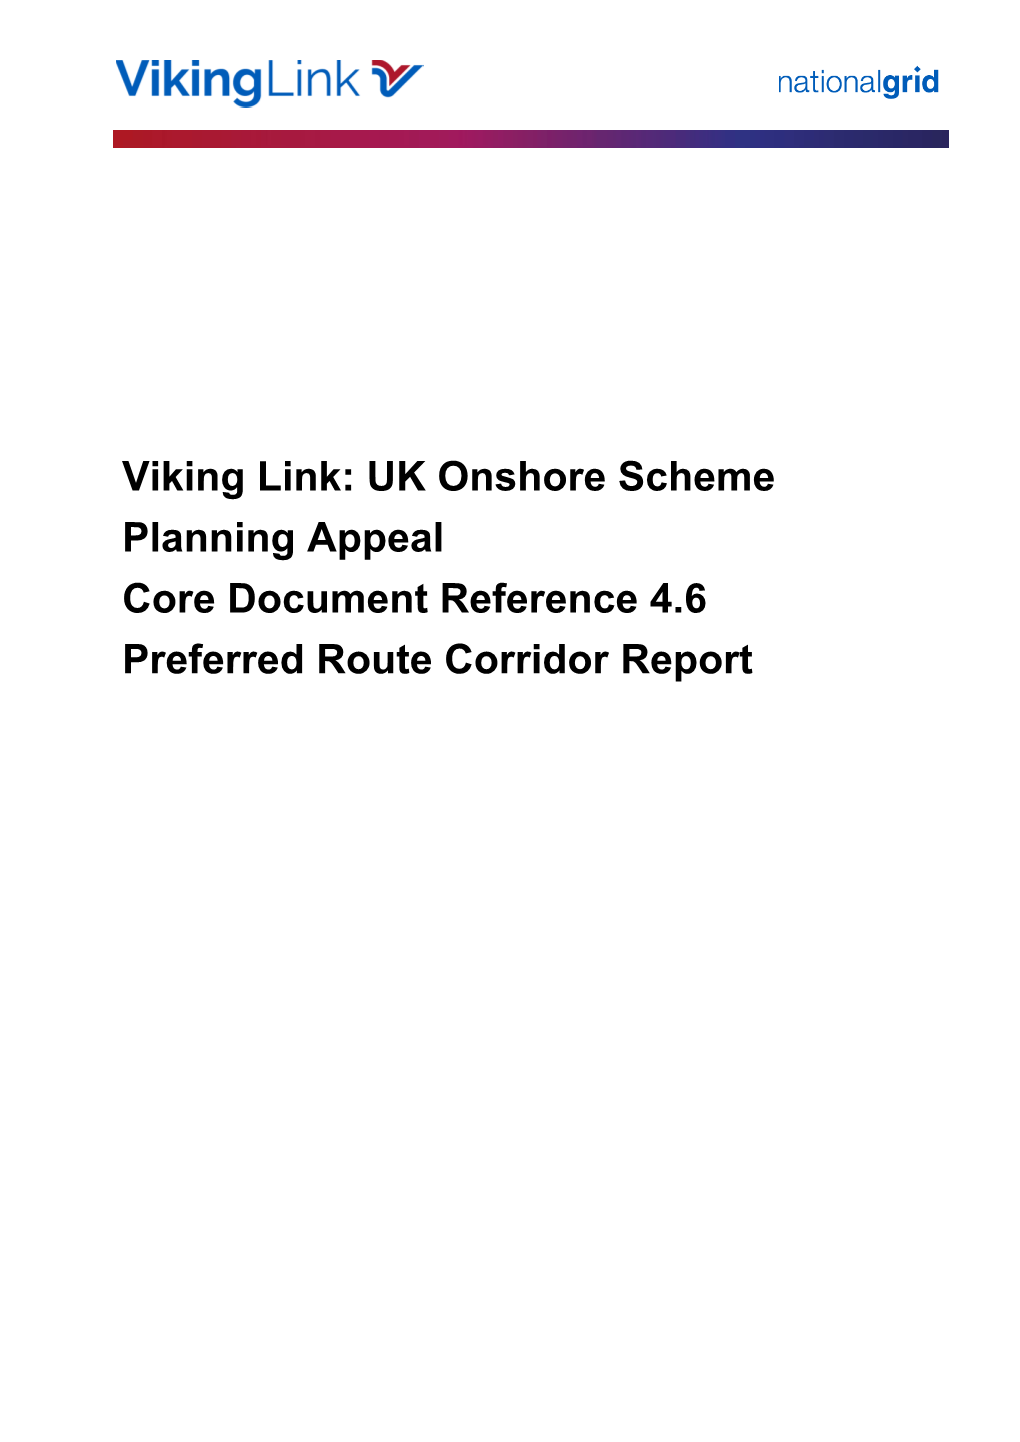 Cdc12 Preferred Route Corridor Report